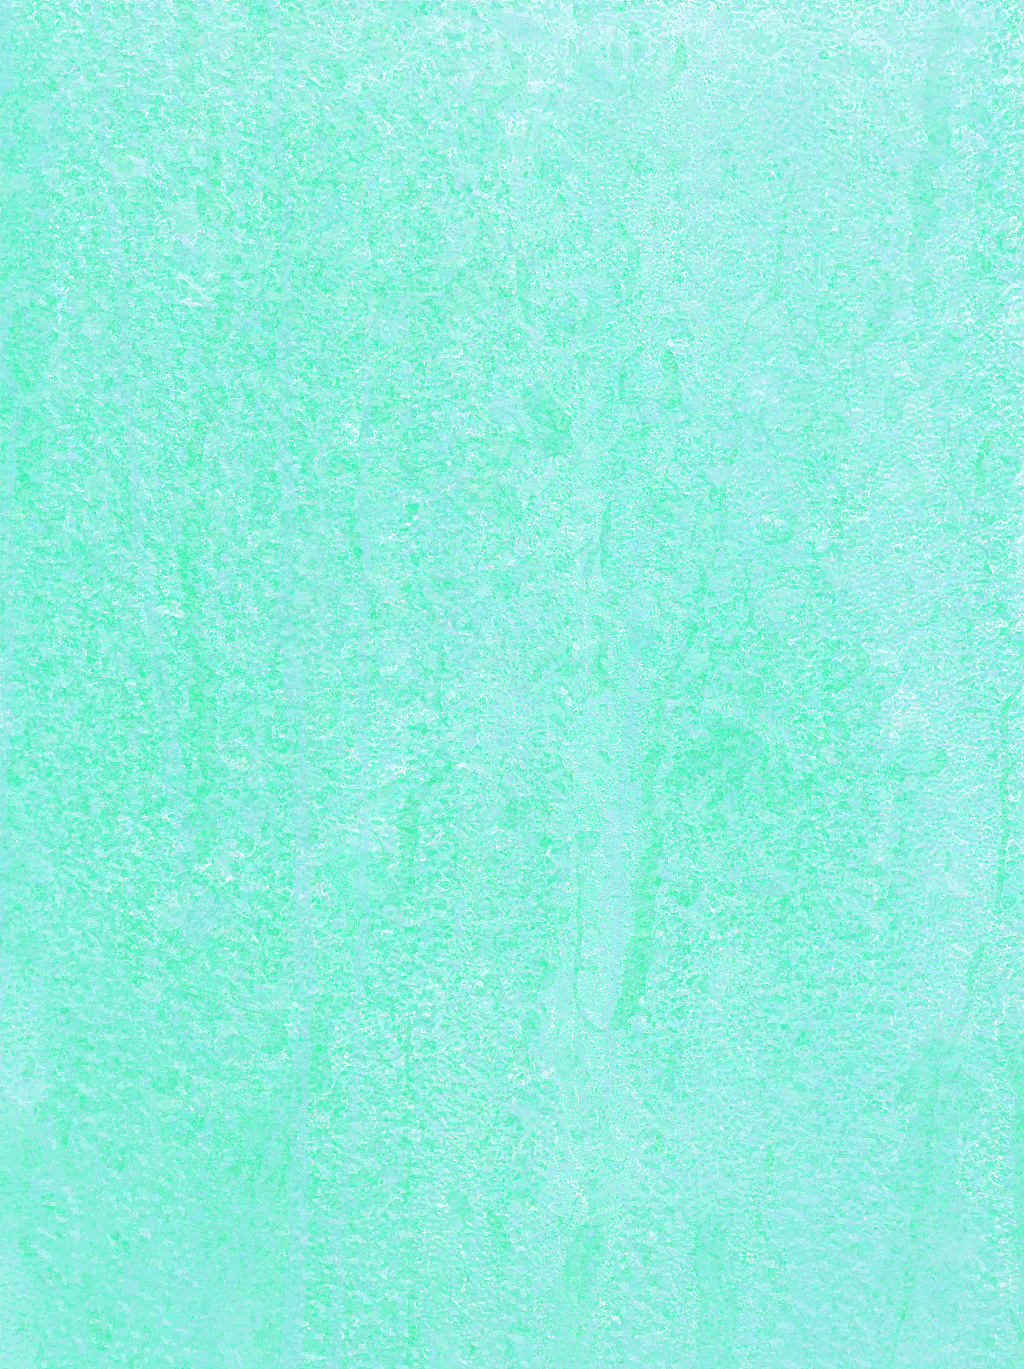 蓝绿色纯色手机壁纸图片